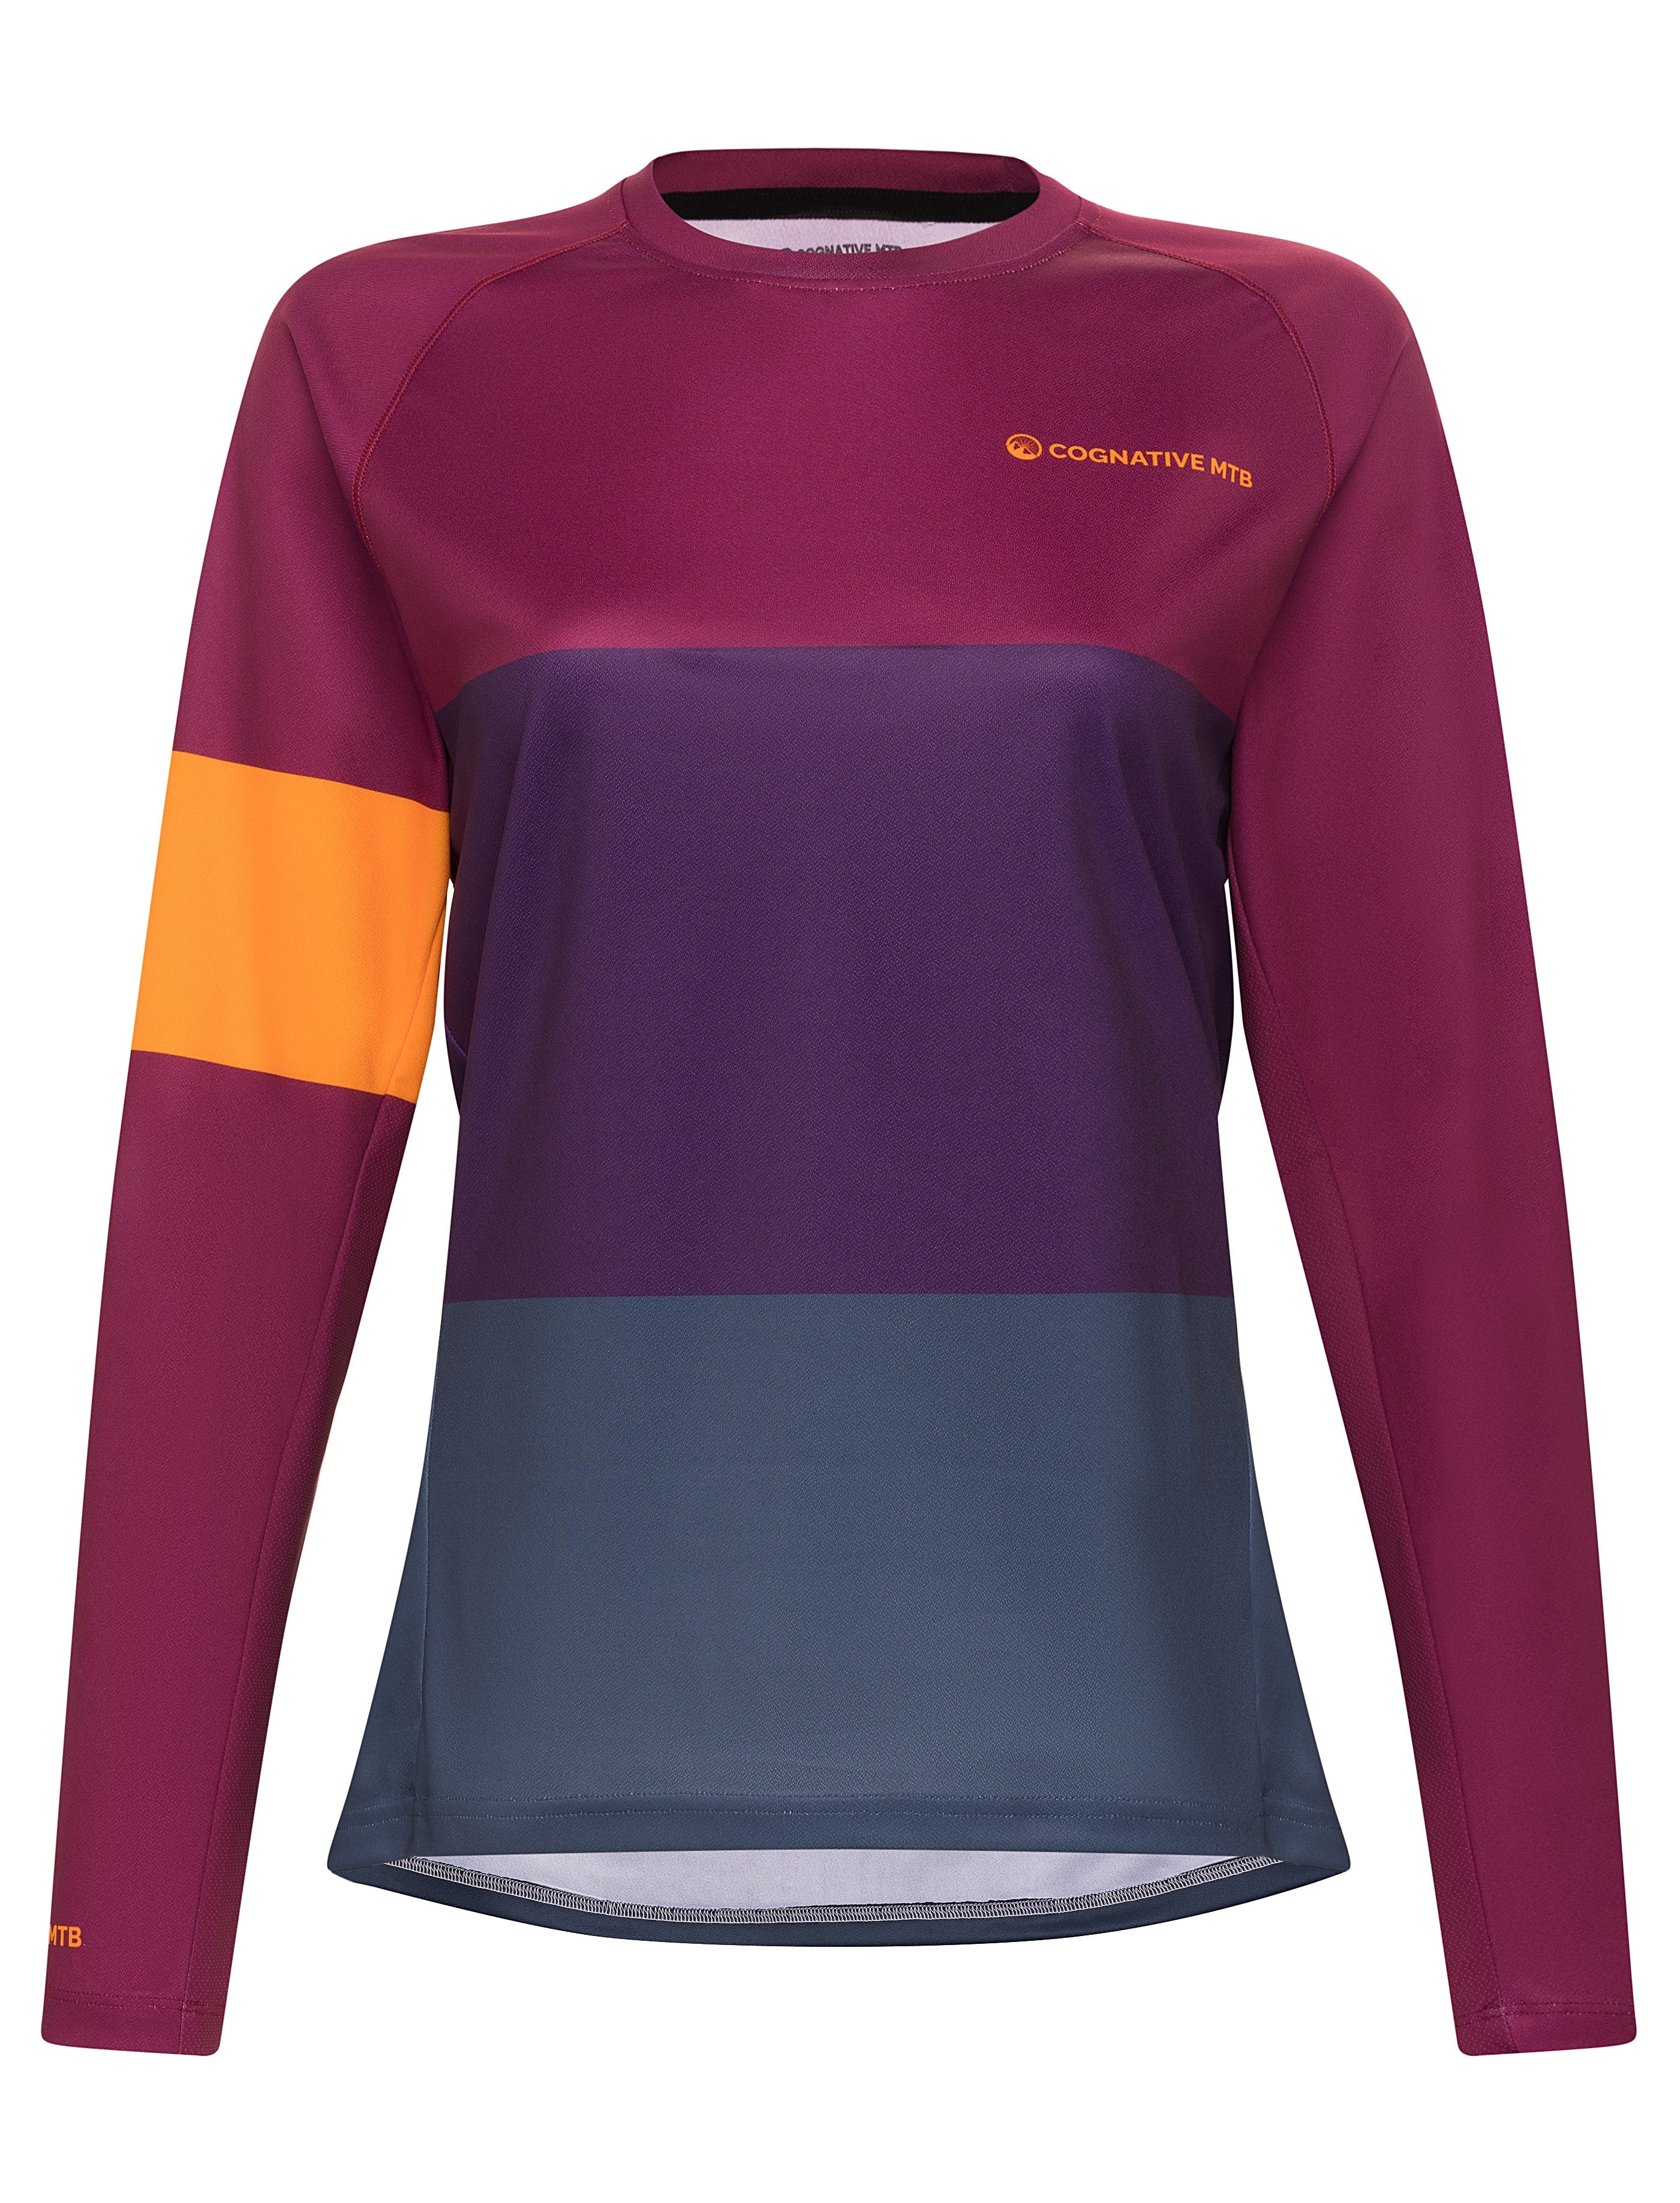 Women's Purple Mountain Bike Jersey - Women's Long Sleeve MTB Jersey -  Cognative MTB®